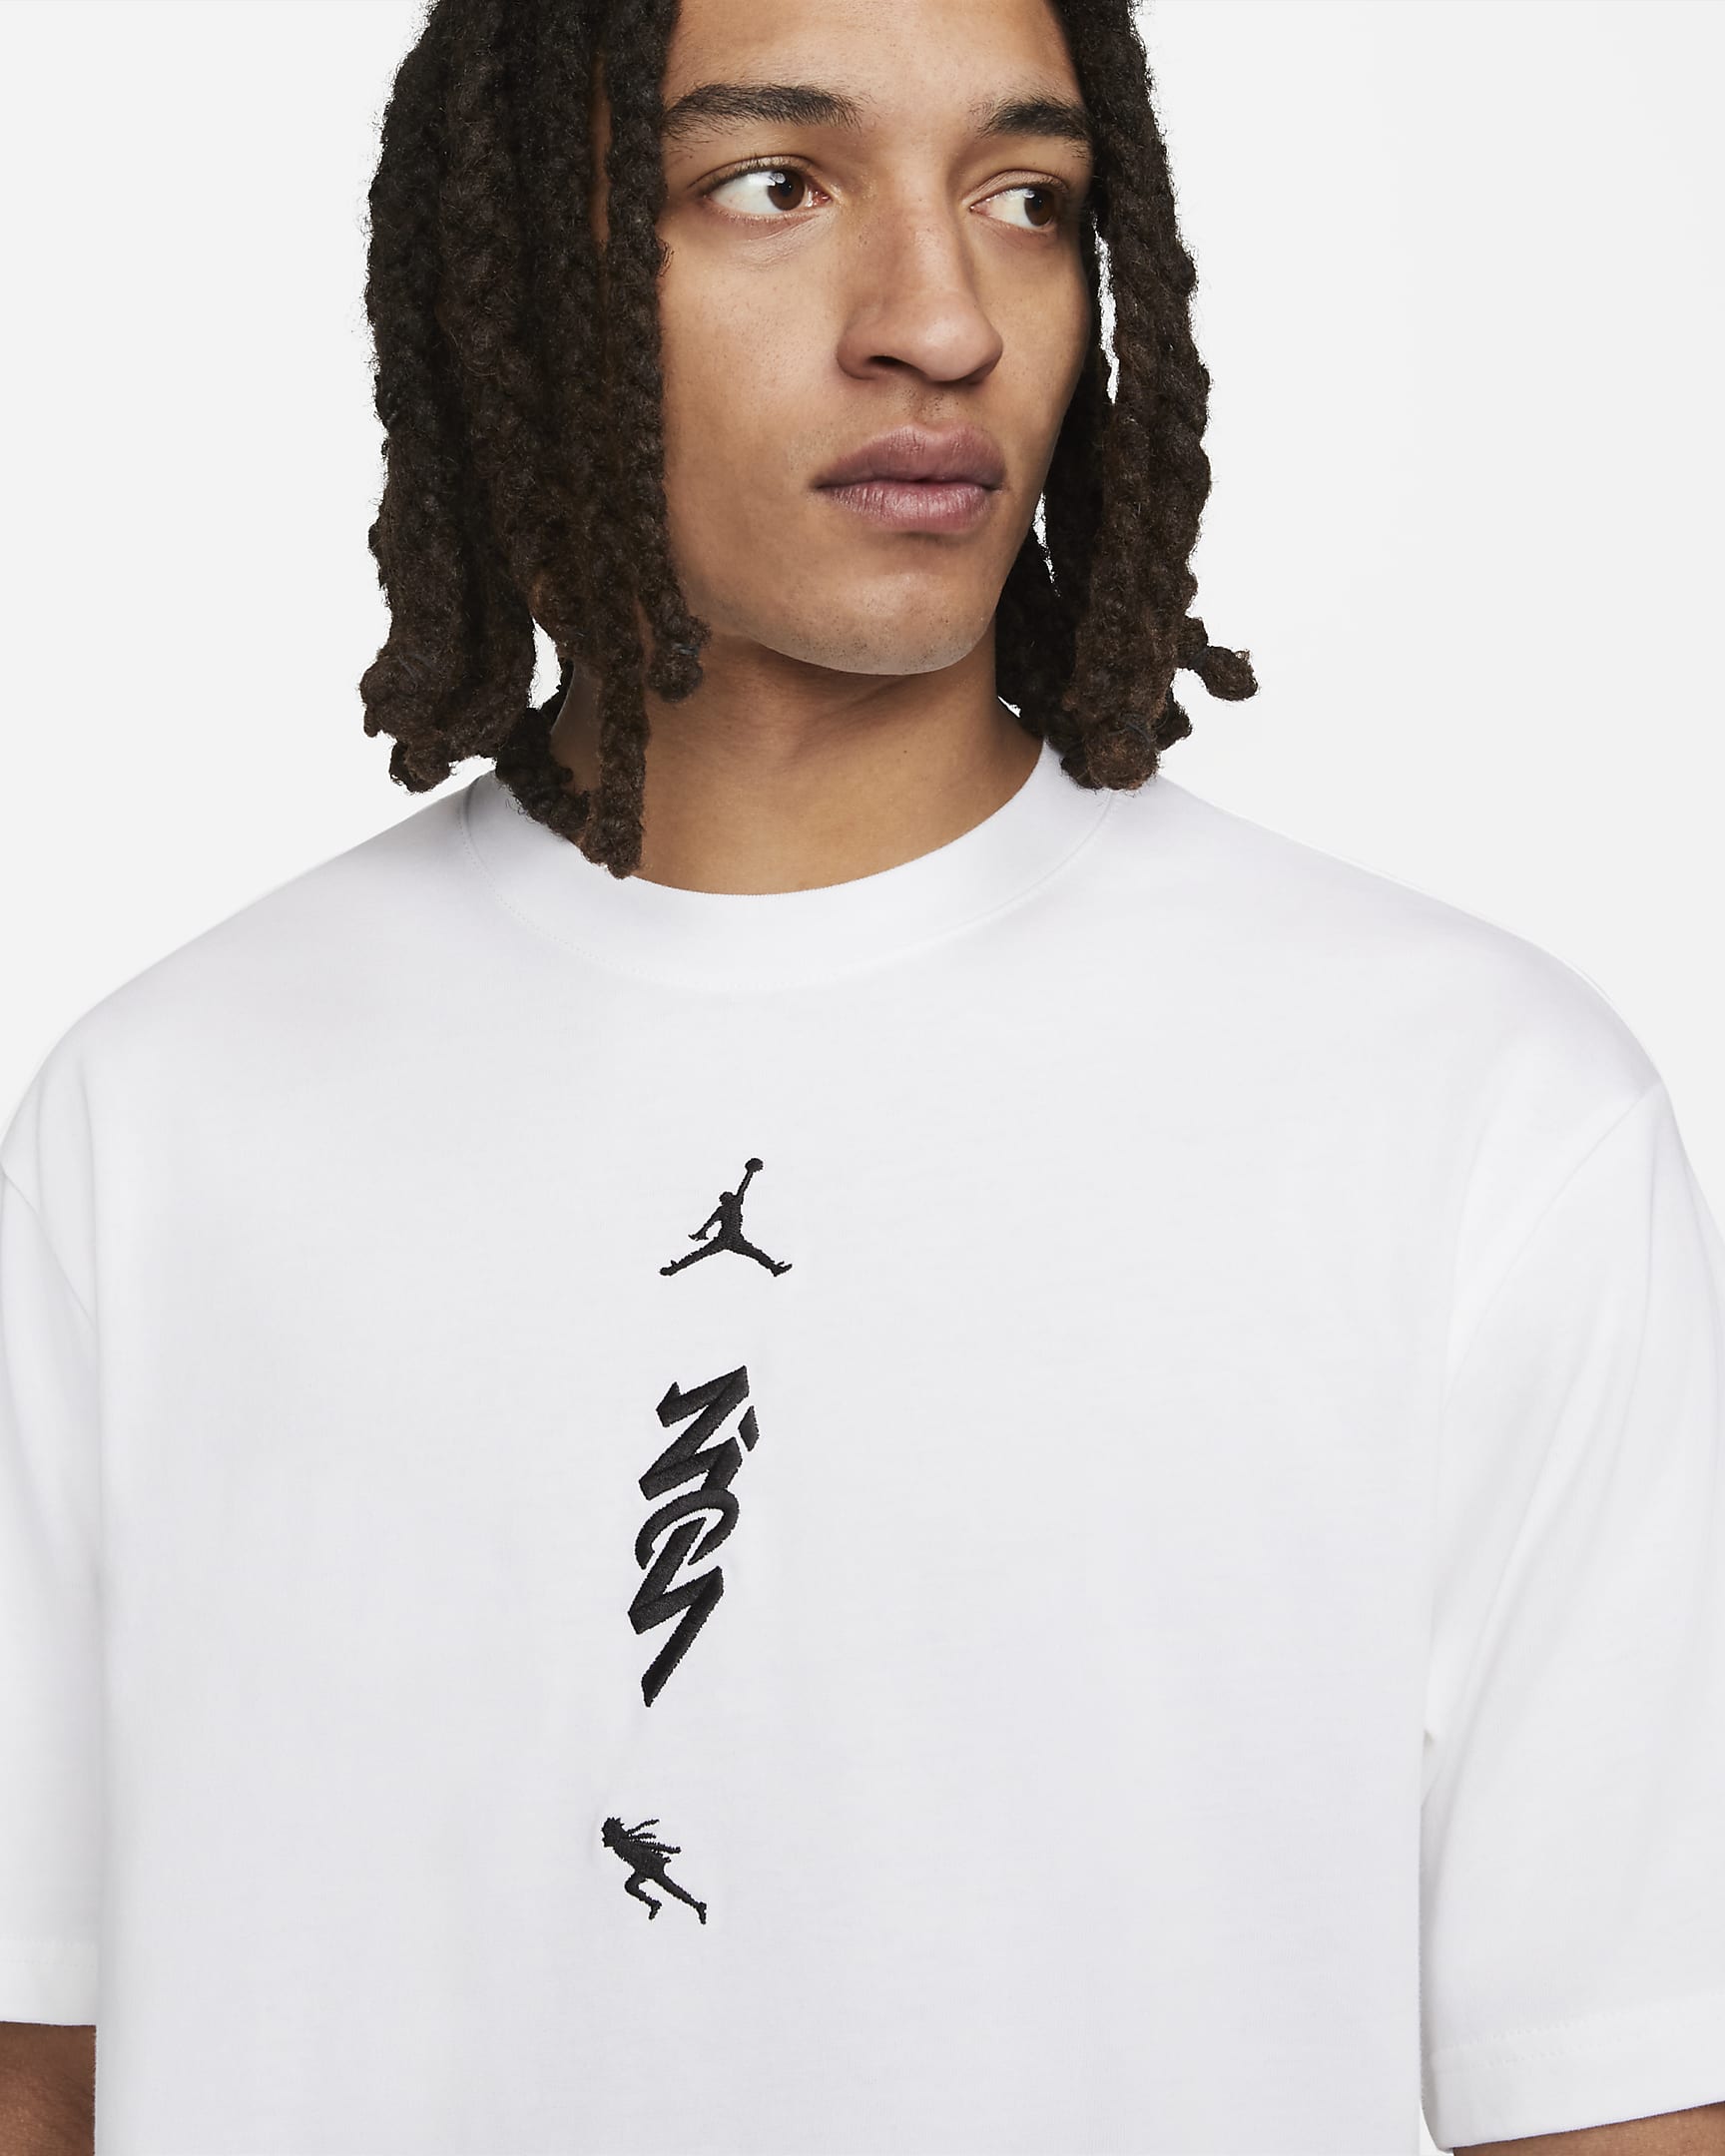 Zion x Naruto Men's T-shirt. Nike ID